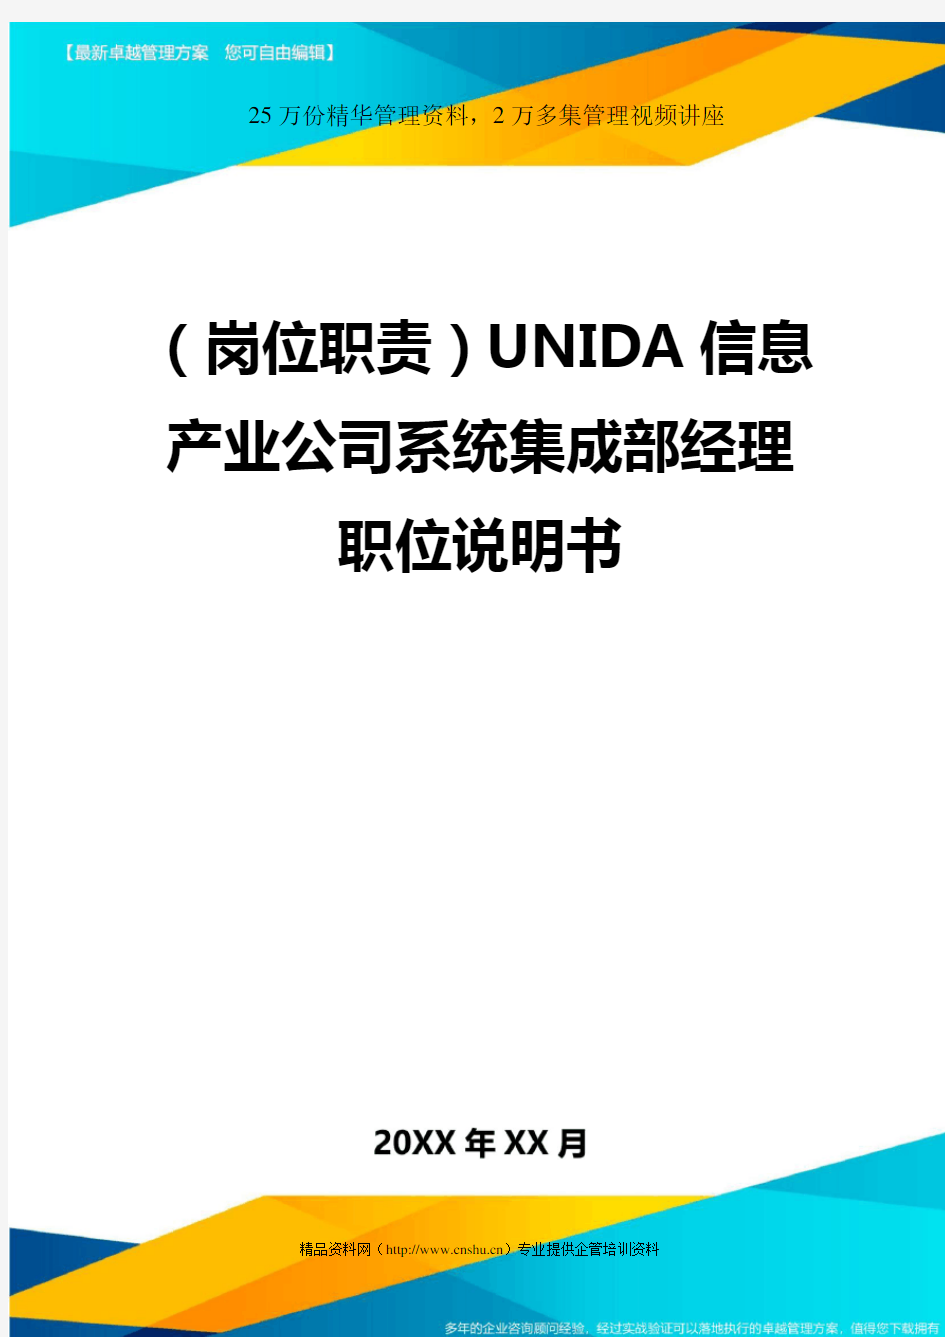 (岗位职责)UNIDA信息产业公司系统集成部经理职位说明书